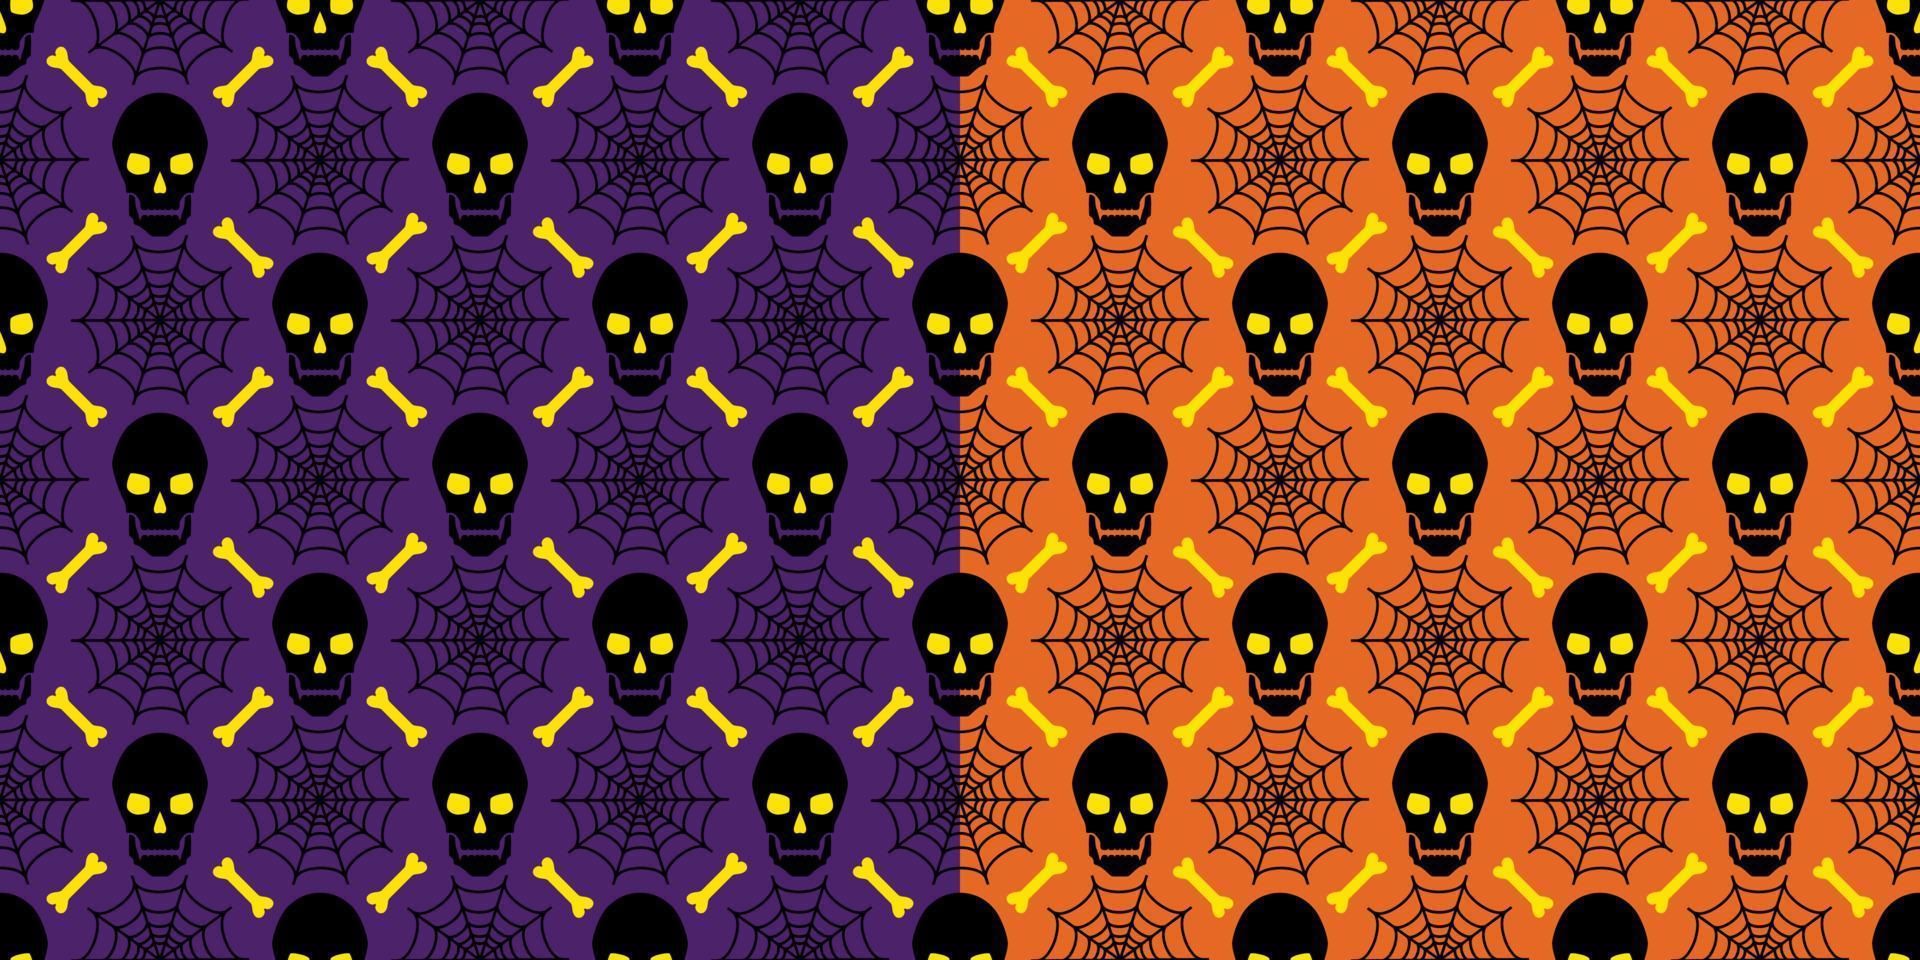 ensemble de motifs géométriques halloween orange et violet sans couture avec crânes, toile d'araignée, os dans une grille carrée diagonale. vecteur. vecteur